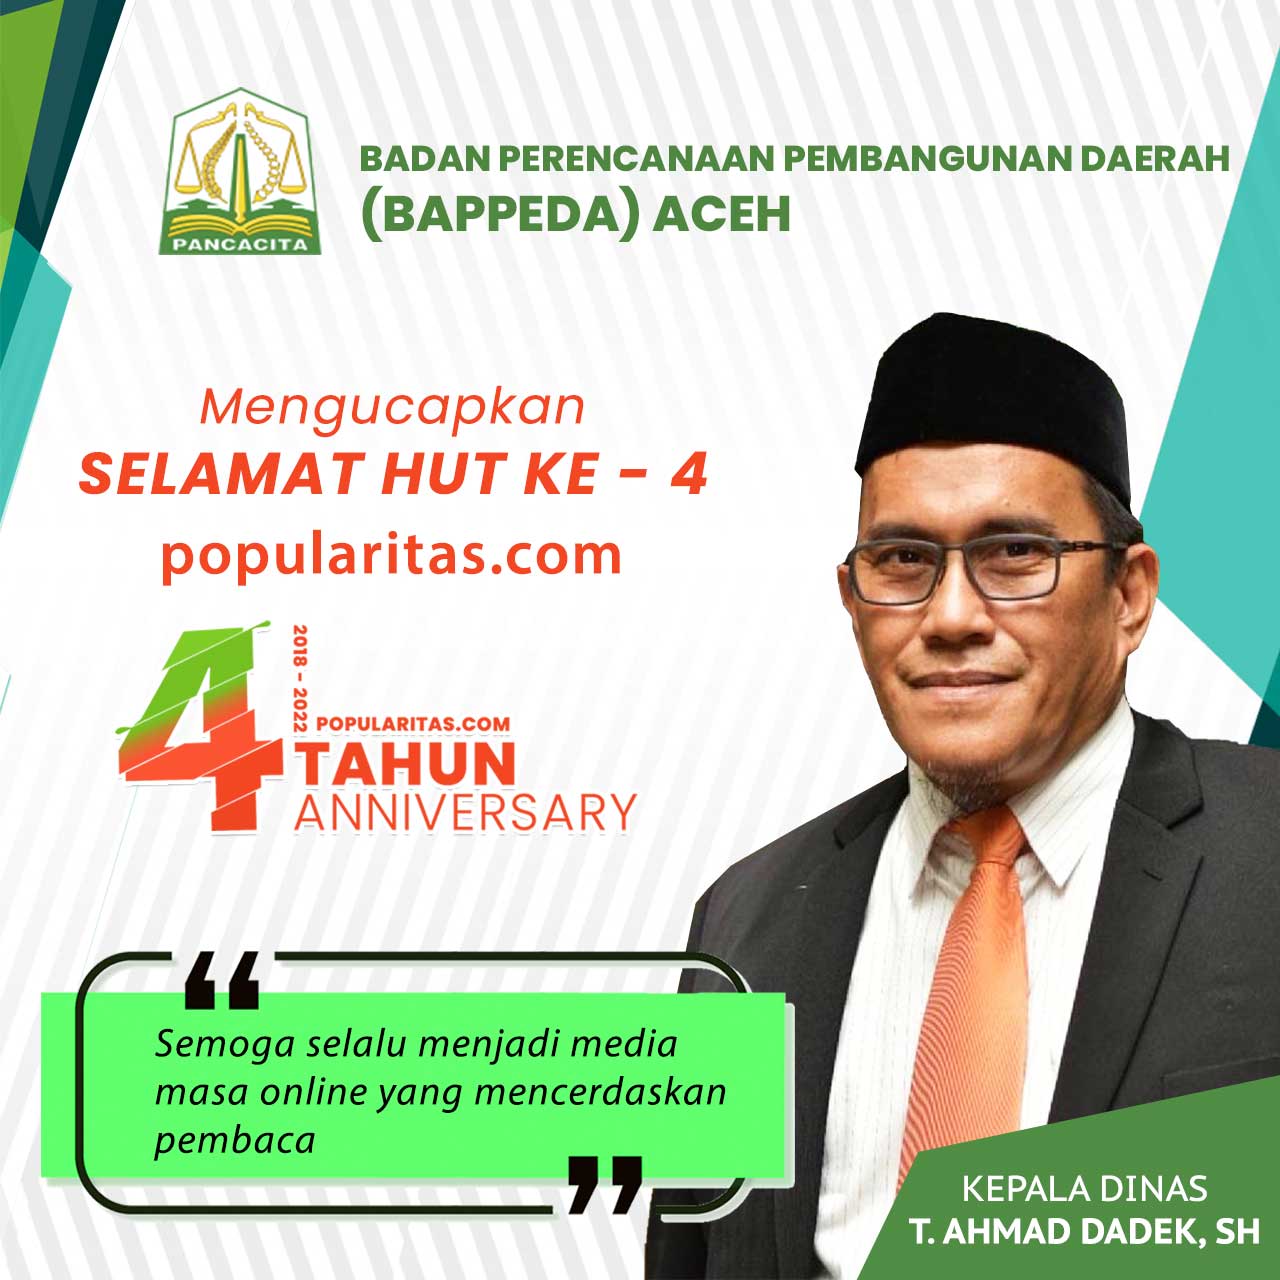 Ucapan Hut Popularitas ke 4 – Bappeda Aceh